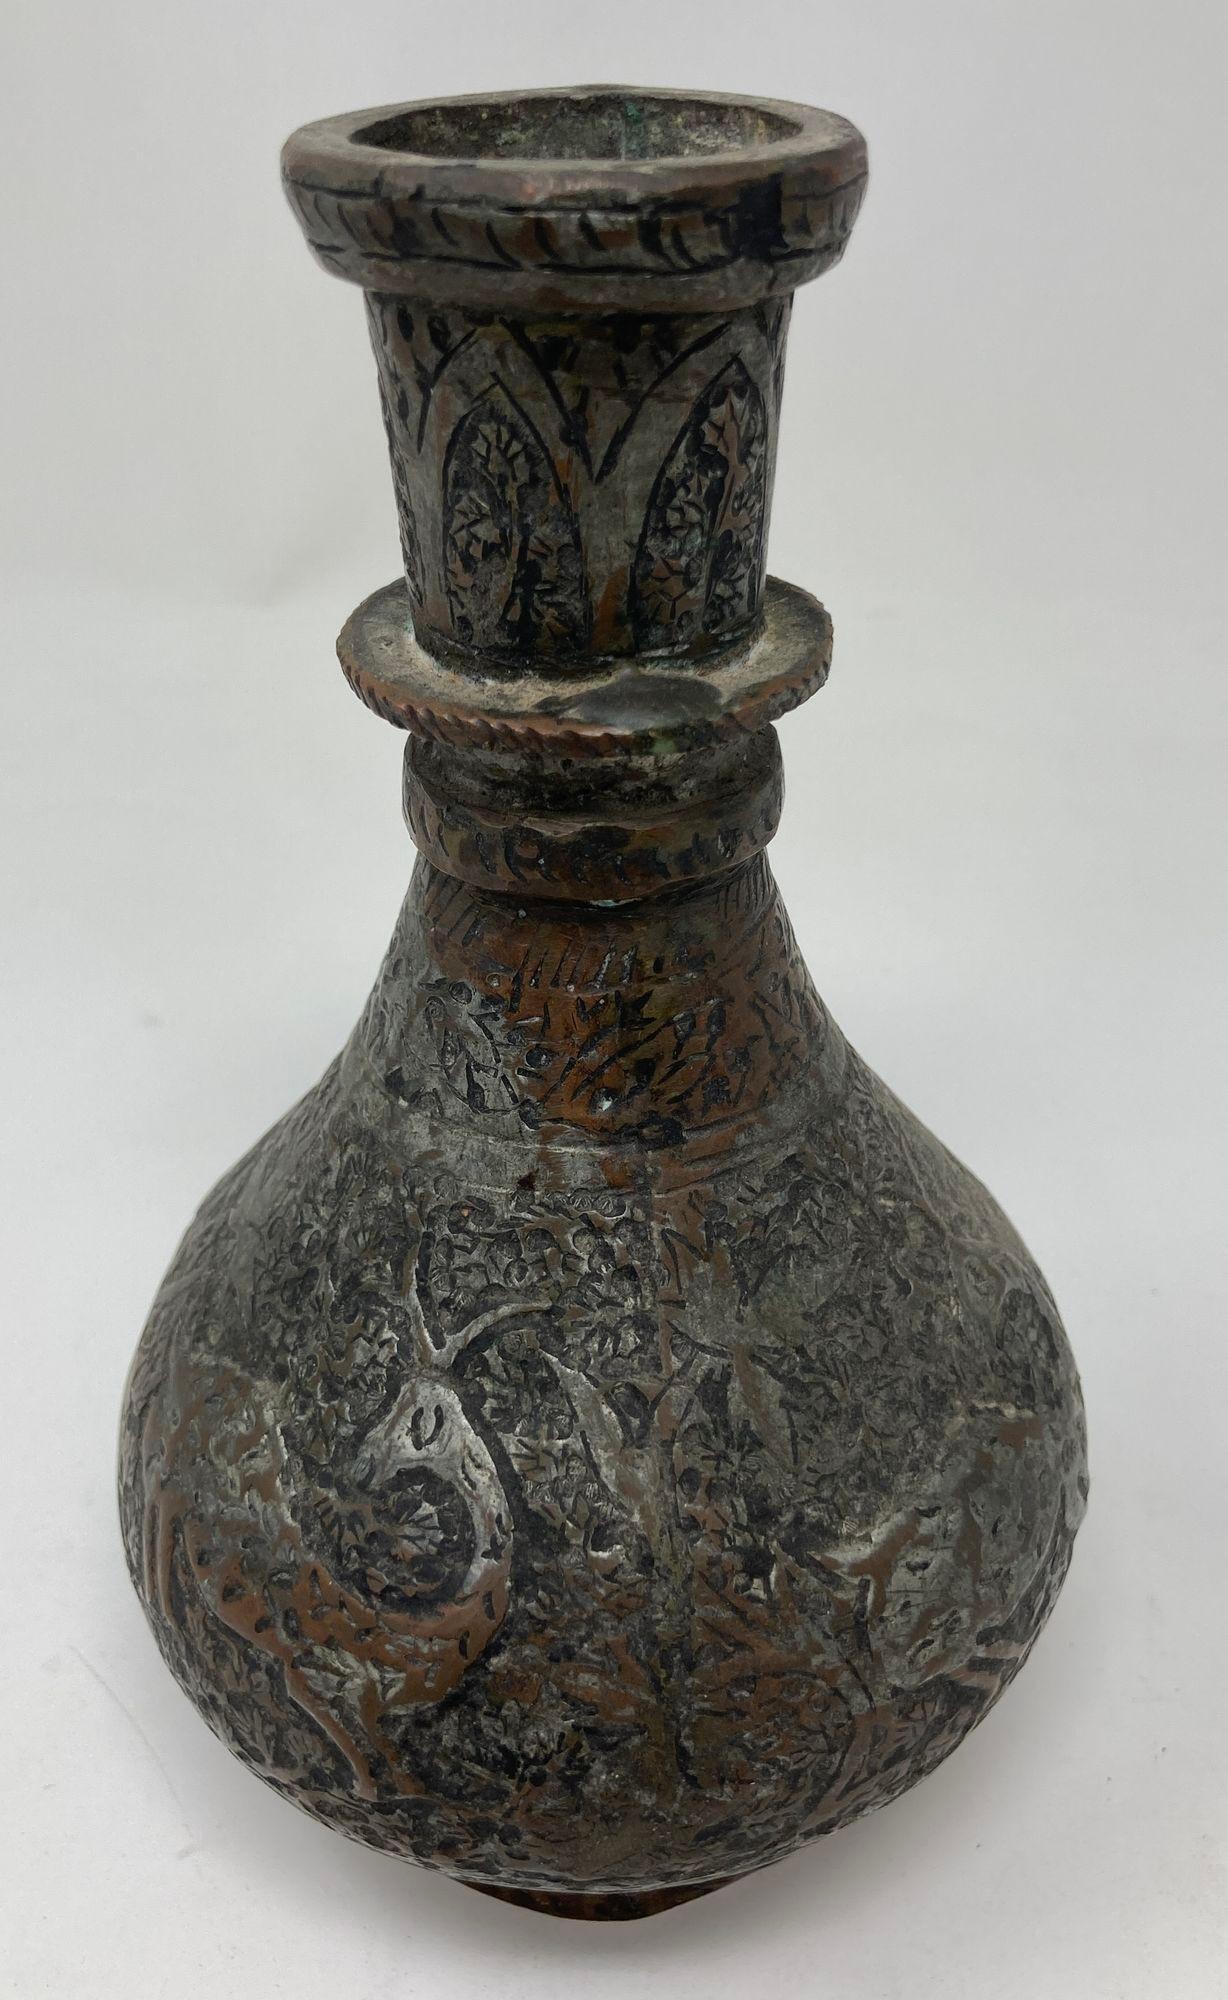 Antike islamische Kupferflasche aus Metall mit kugelförmigem Boden, verziert mit einem vertieften, sich wiederholenden floralen und geometrischen Motiv mit einer Hirschfigur.
19. Jahrhundert Indo-persische islamische Vase aus verzinntem Kupfer,